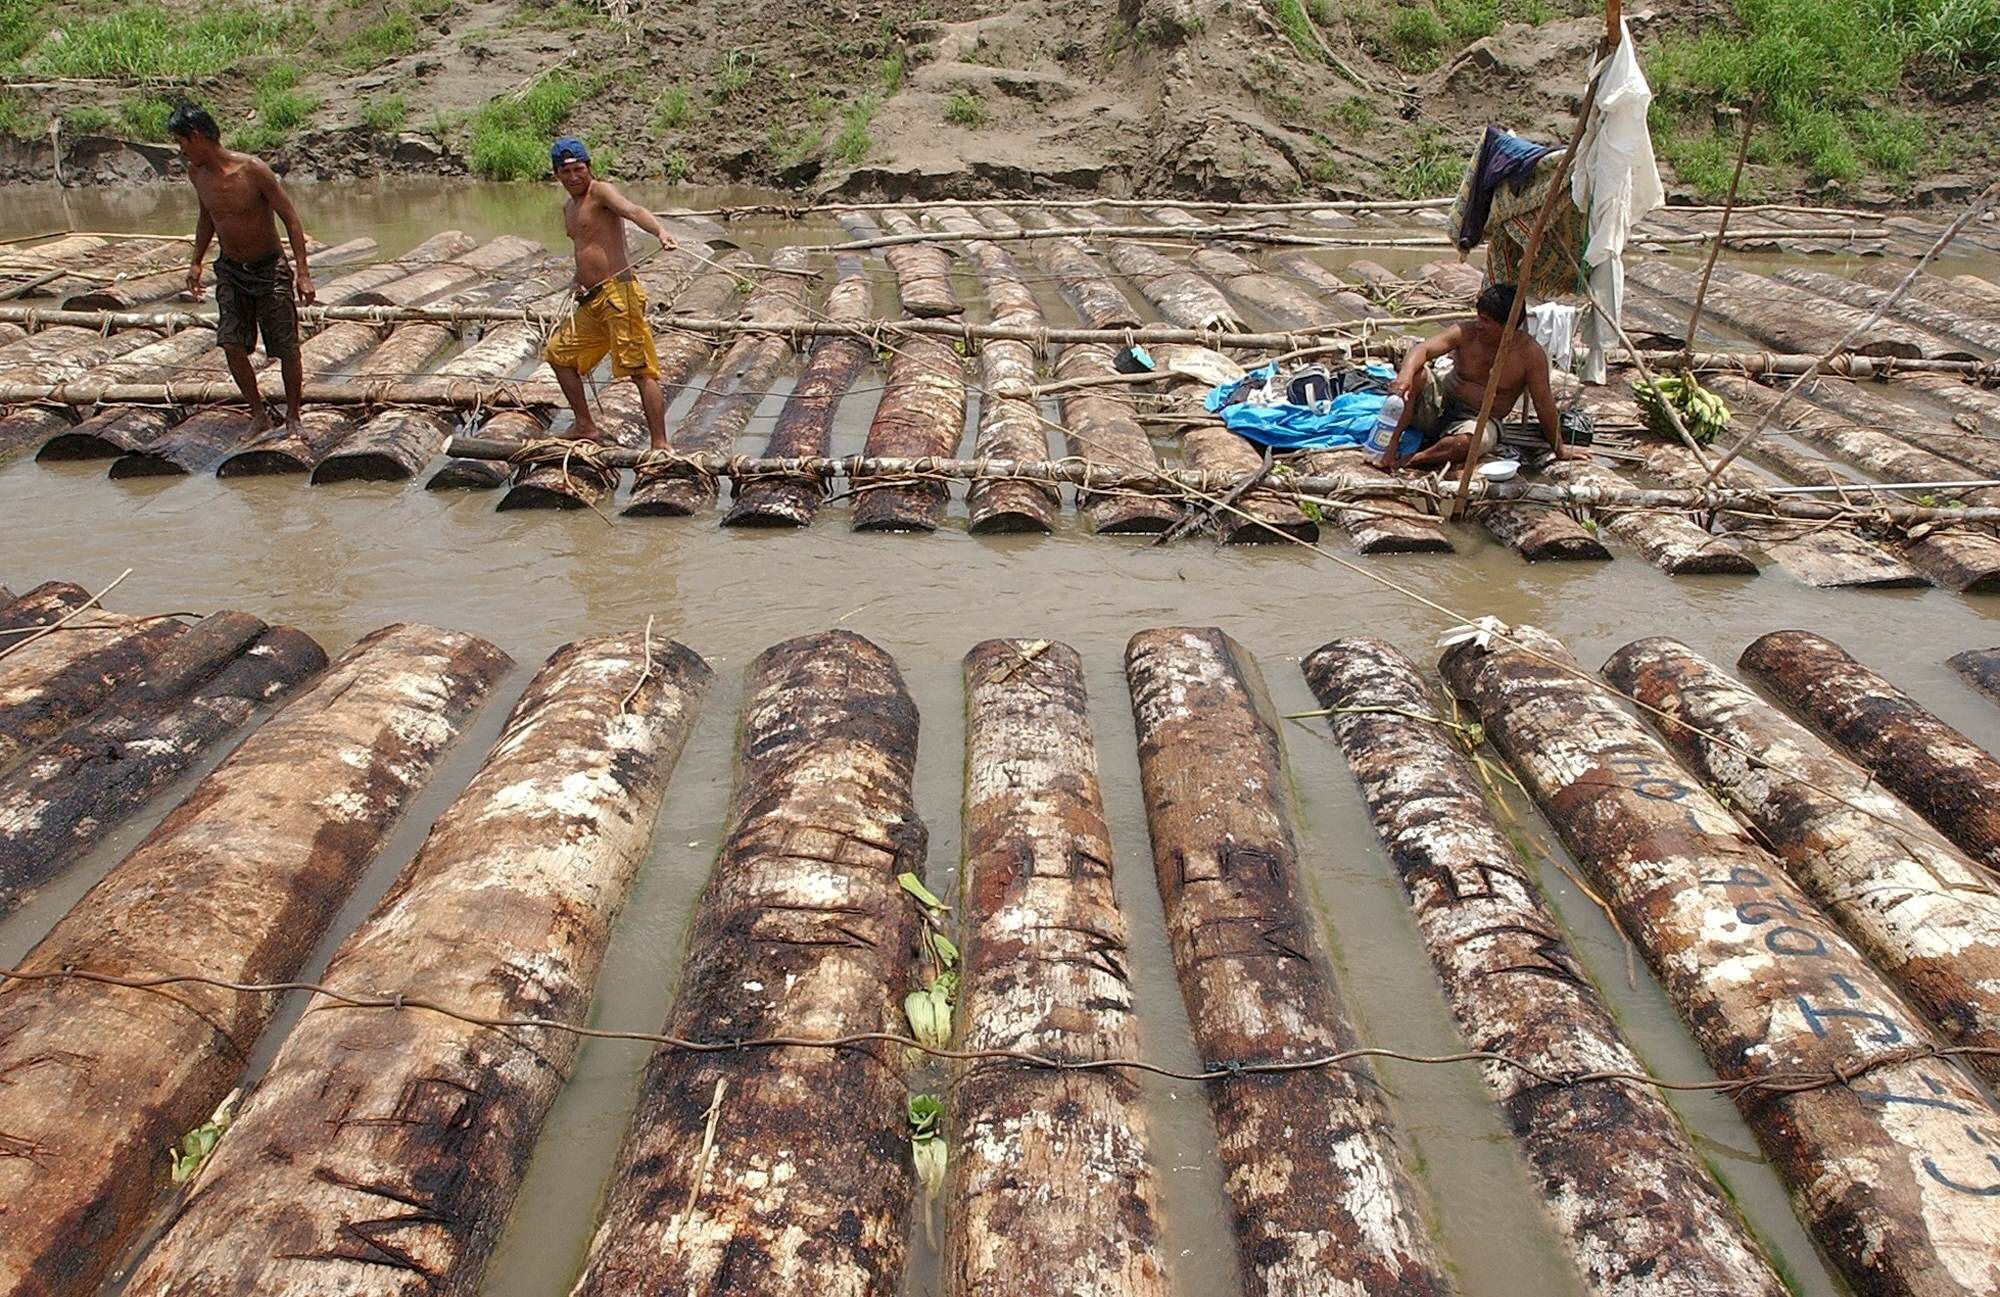 Arboles de cumala talados ilegalmente, trasladados por el río Nanay a los aserraderos de Iquitos.